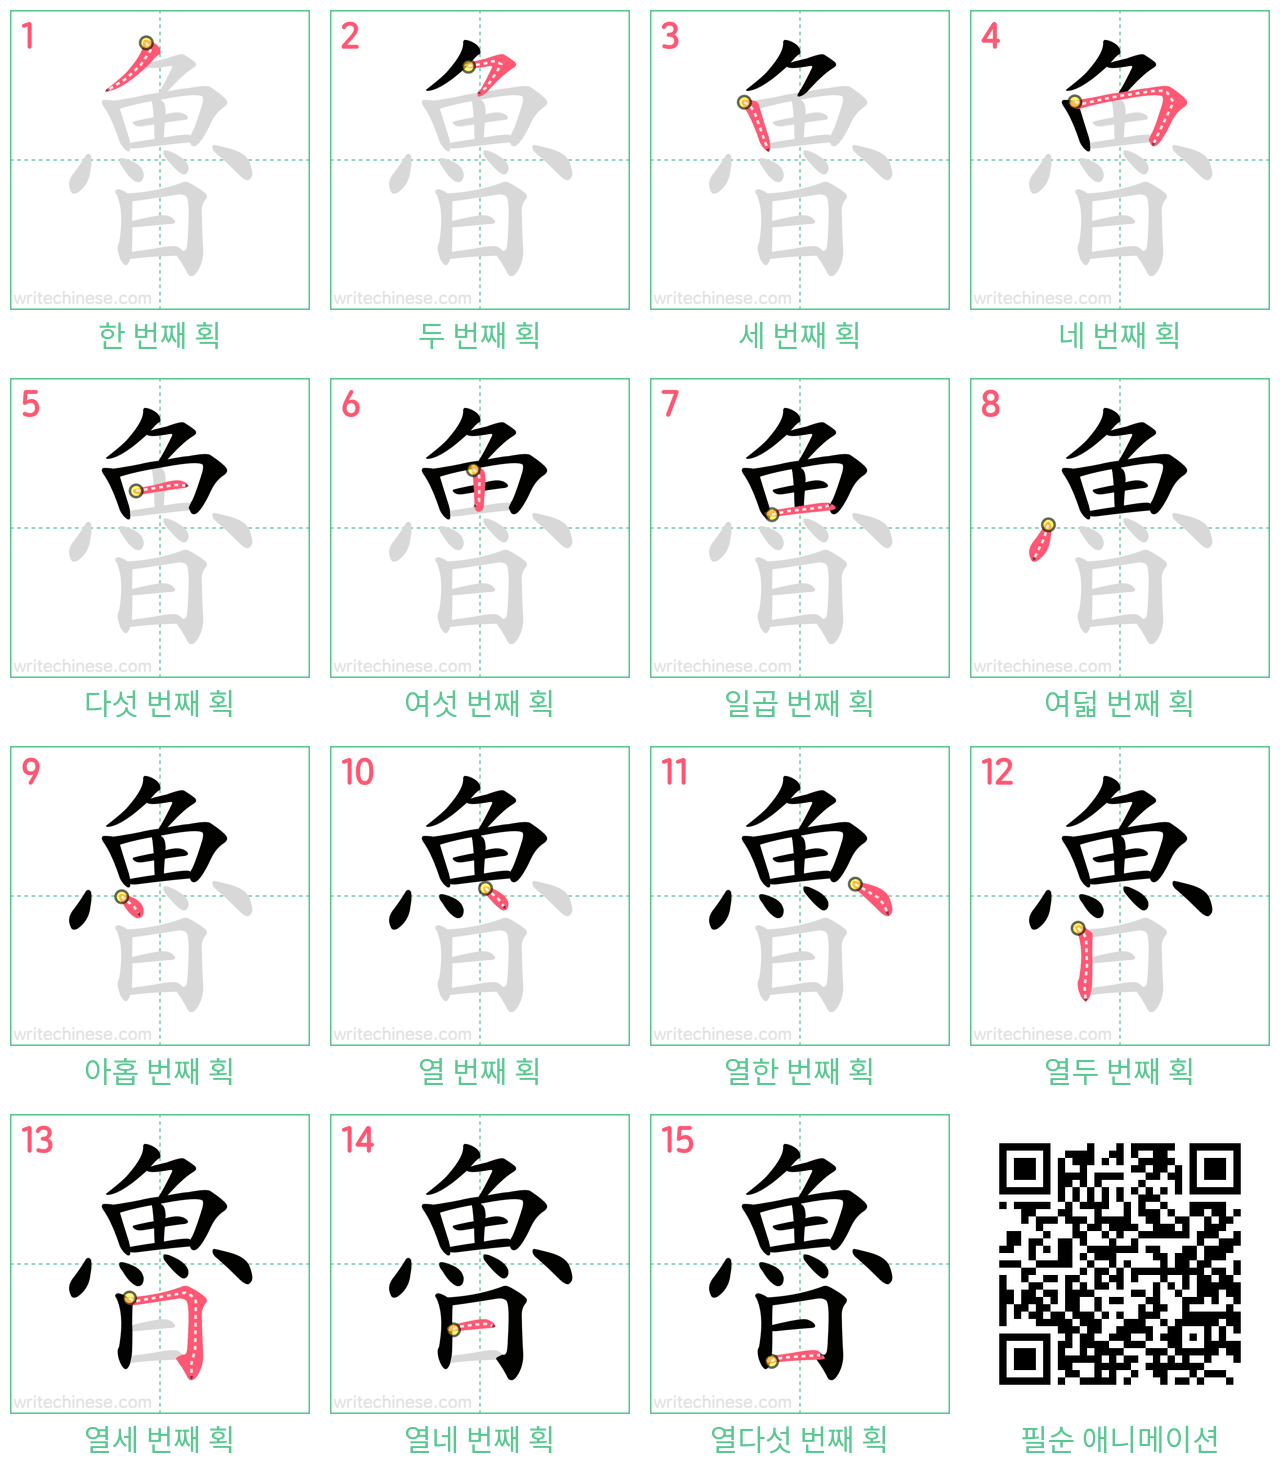 魯 step-by-step stroke order diagrams